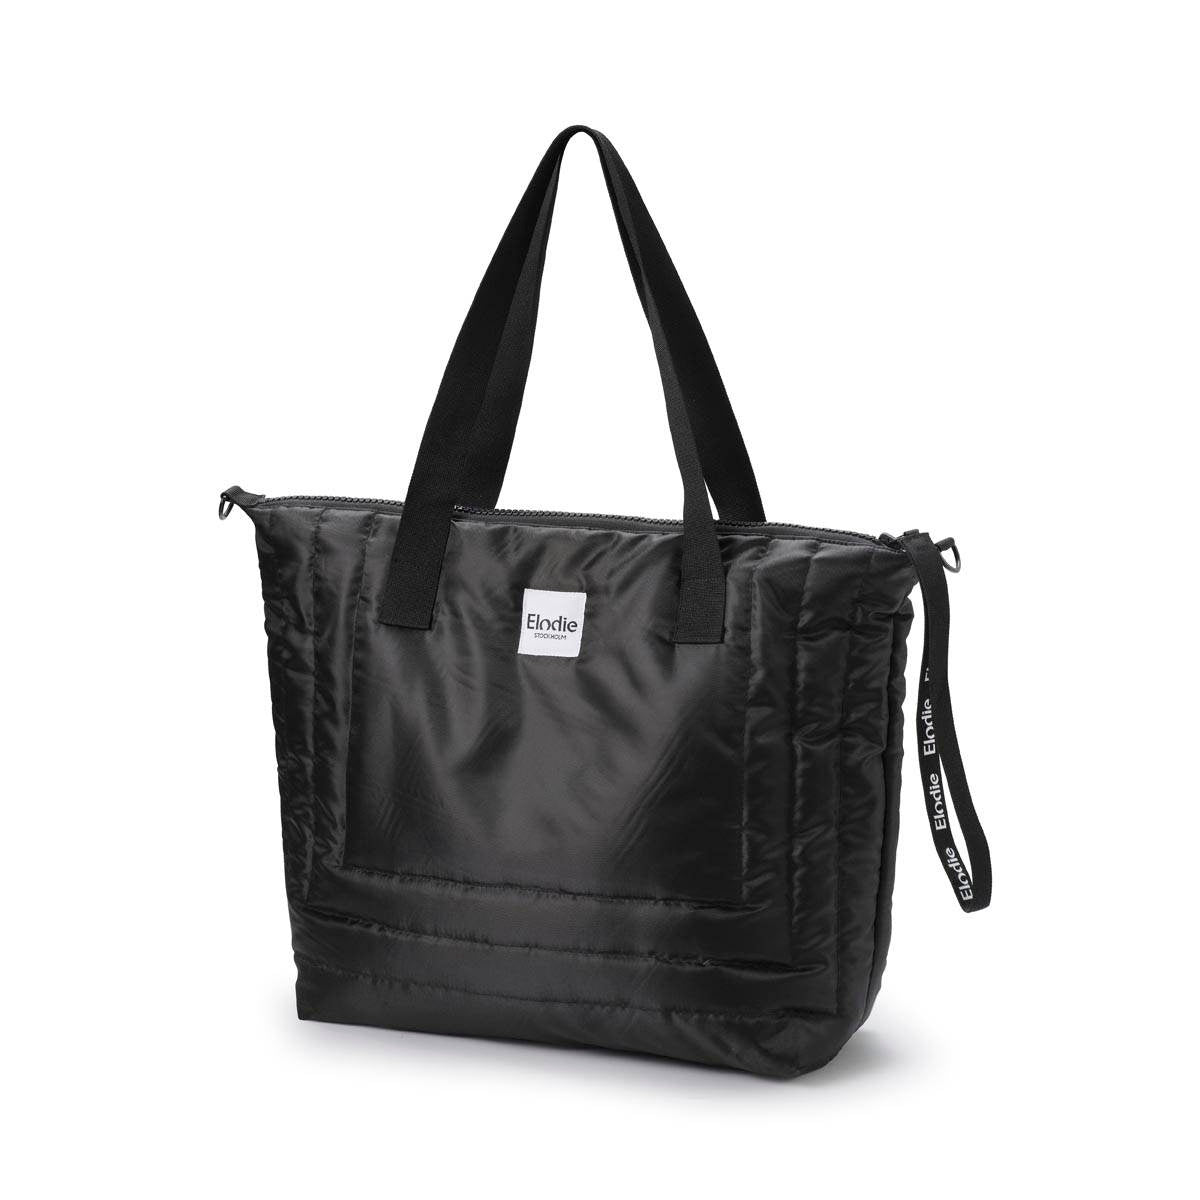 Torba do wózka Elodie Details Black Quilted – stylowa, funkcjonalna i pojemna torba dla mamy, idealna na wszystkie niezbędne akcesoria.